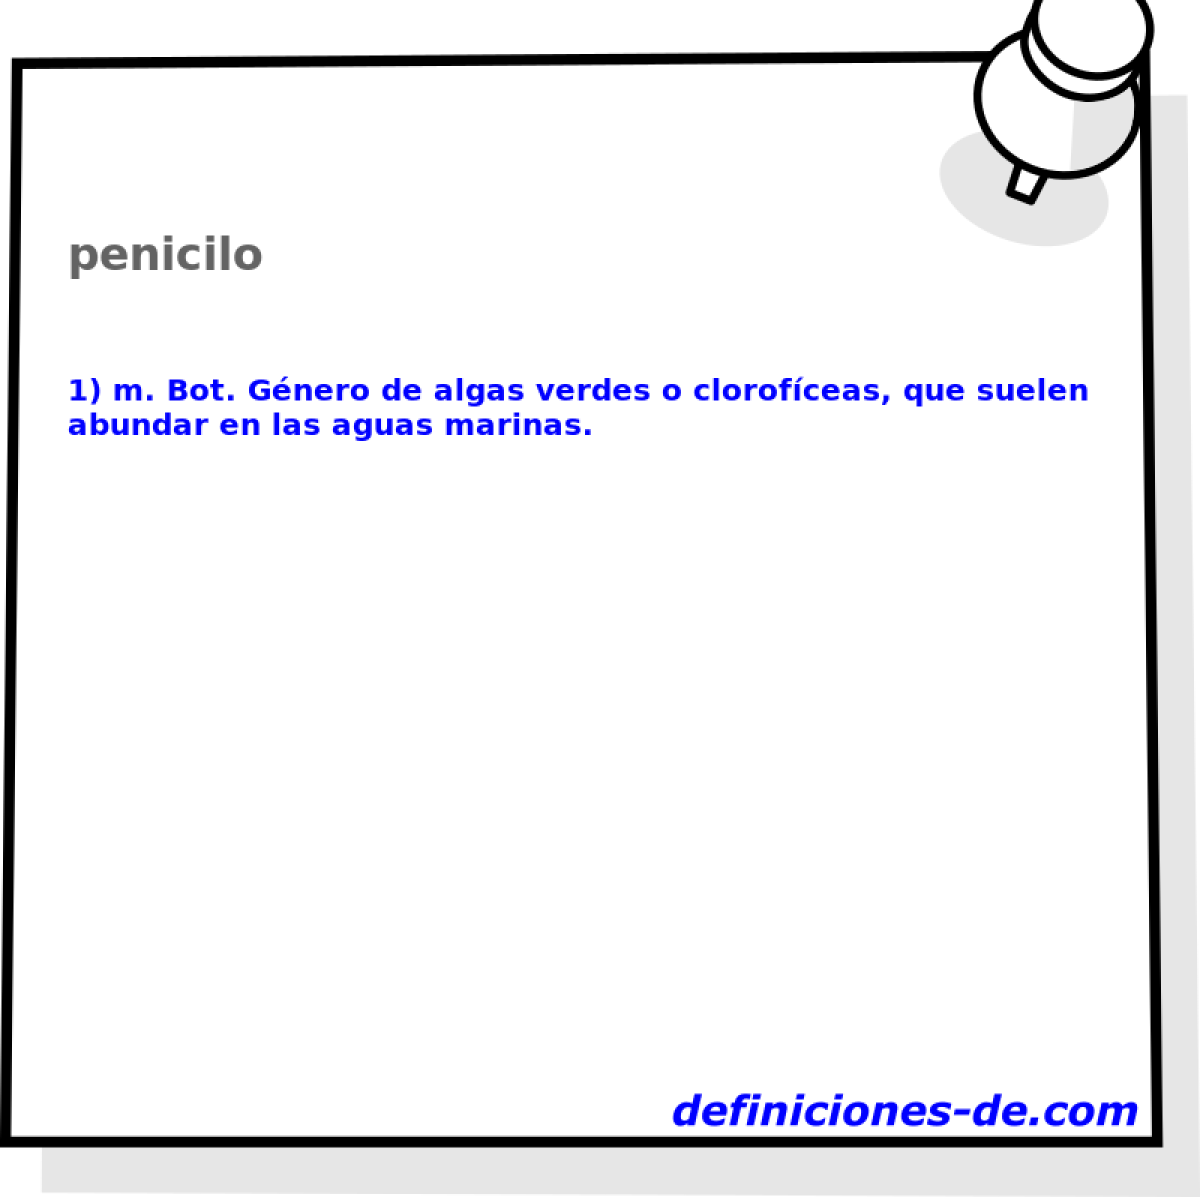 penicilo 